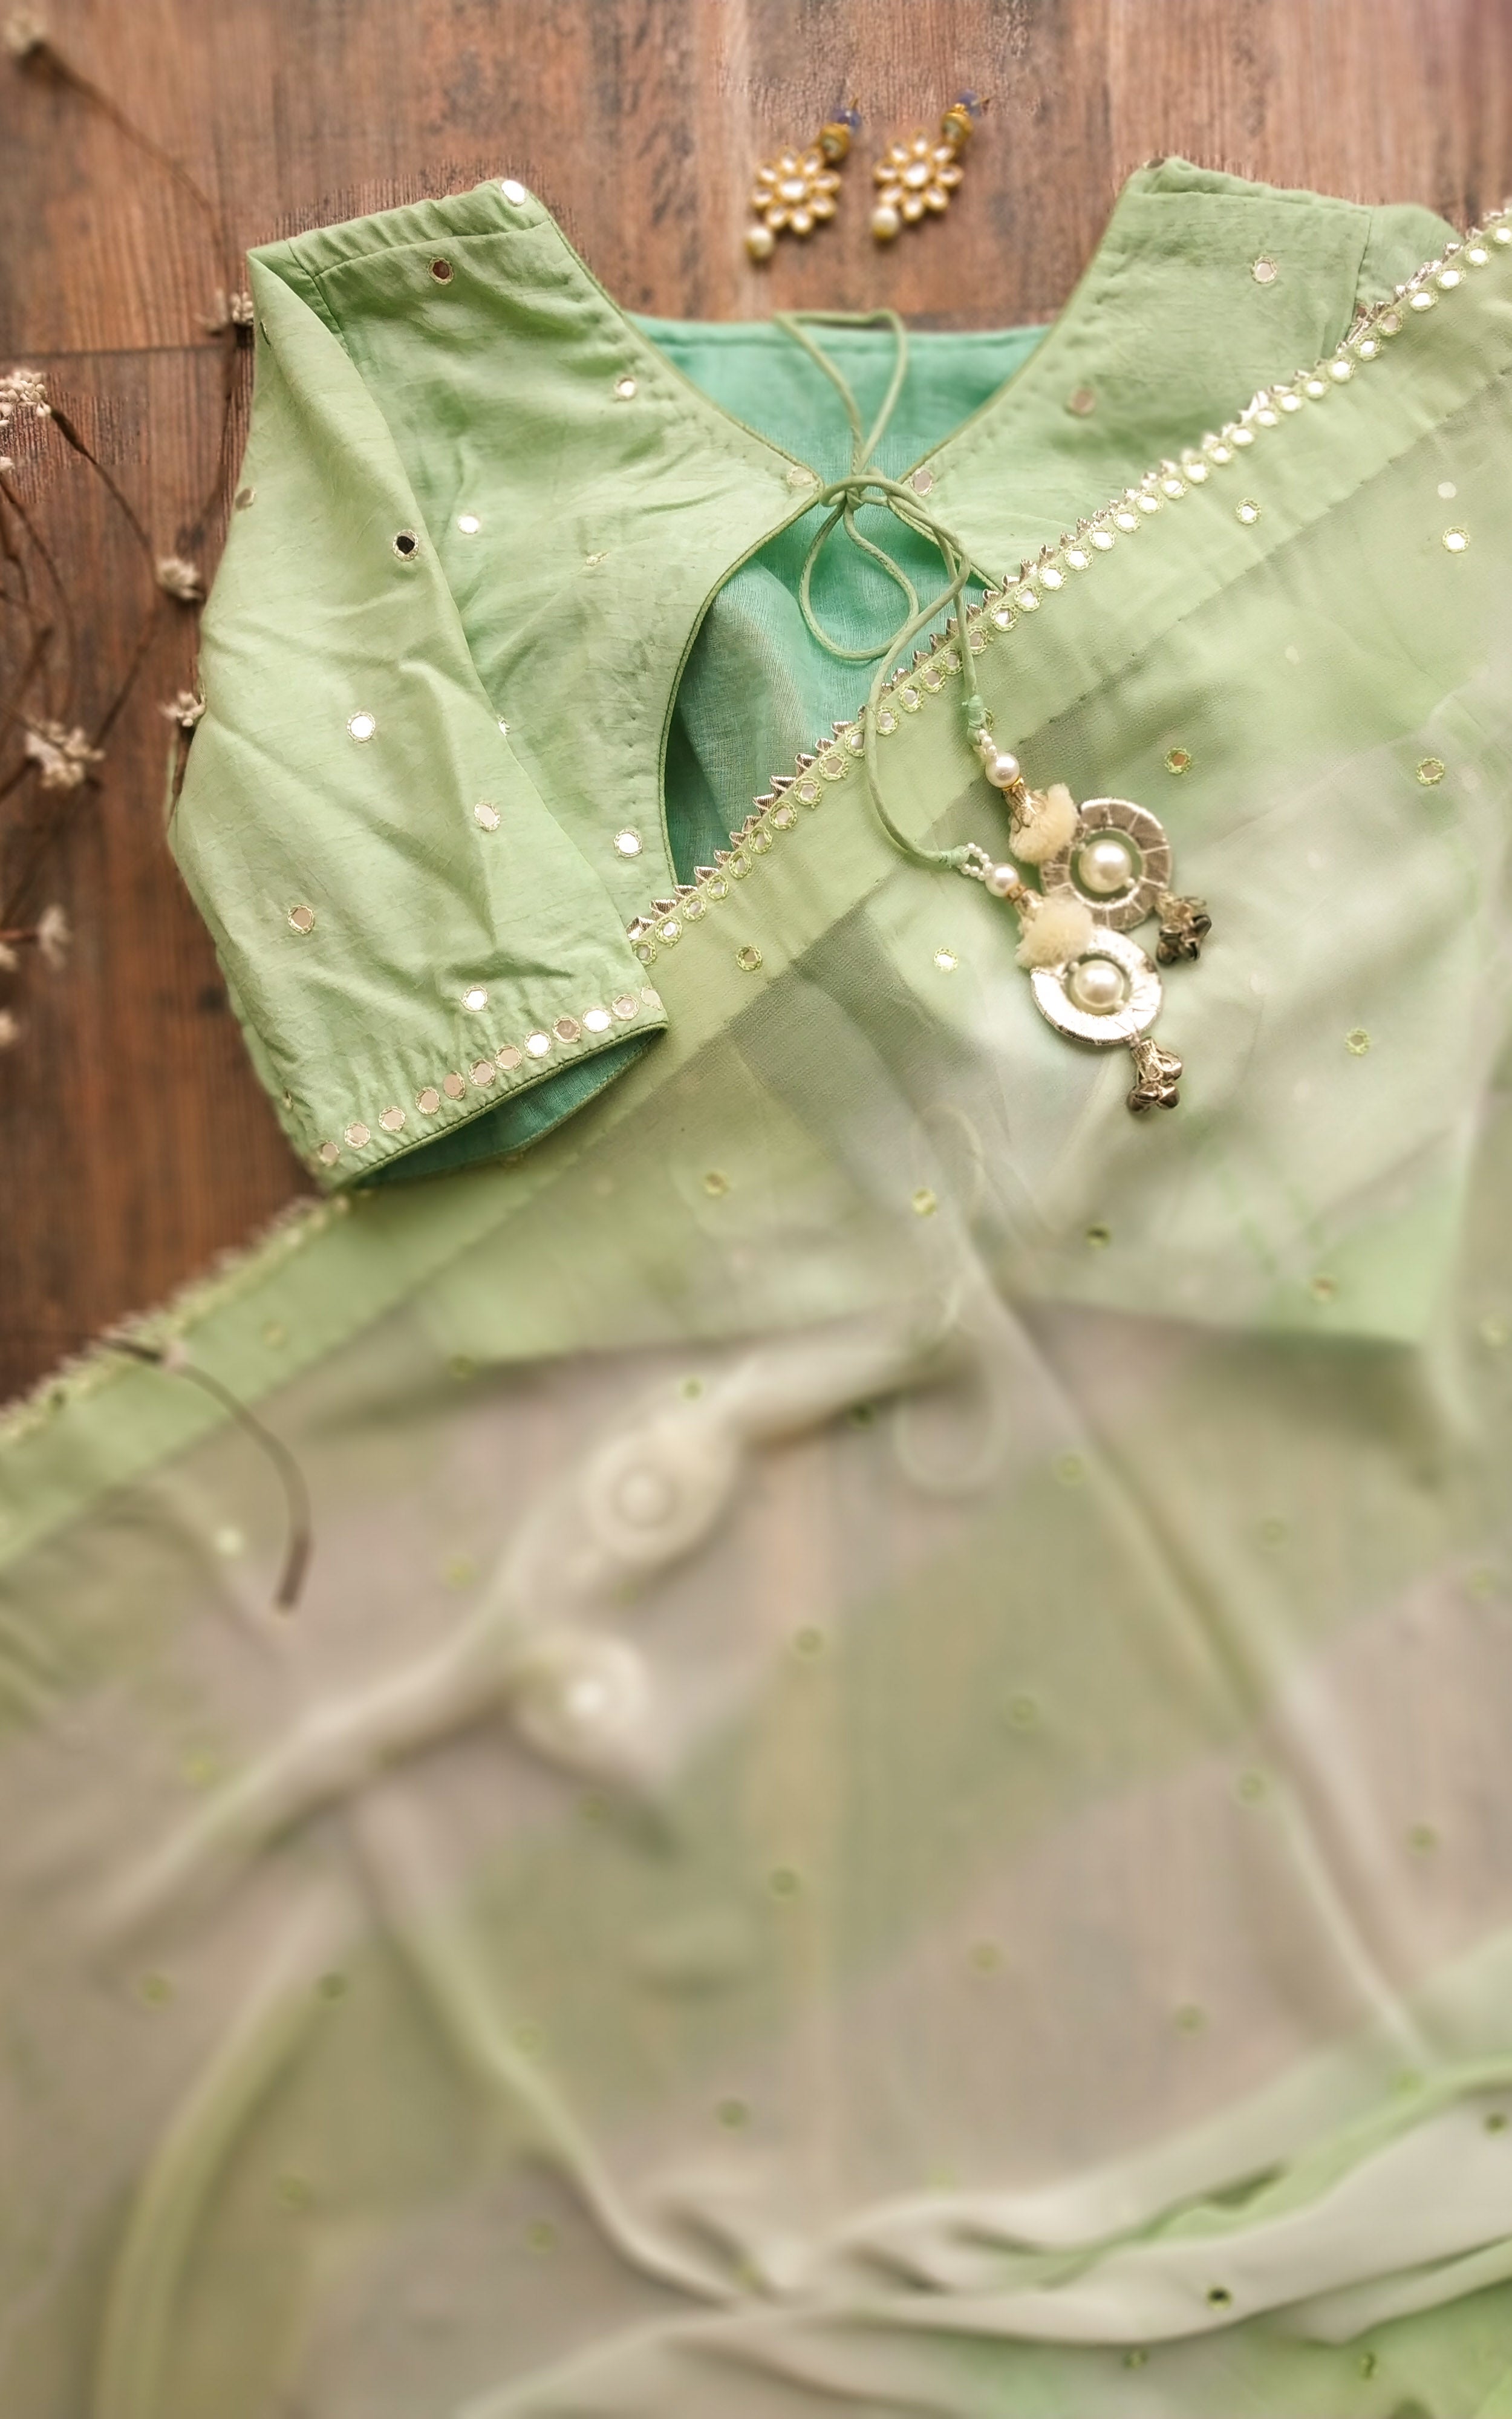 Buy Pastel Green Shibori Mirrorwork Saree Online at LabelKanupriya.